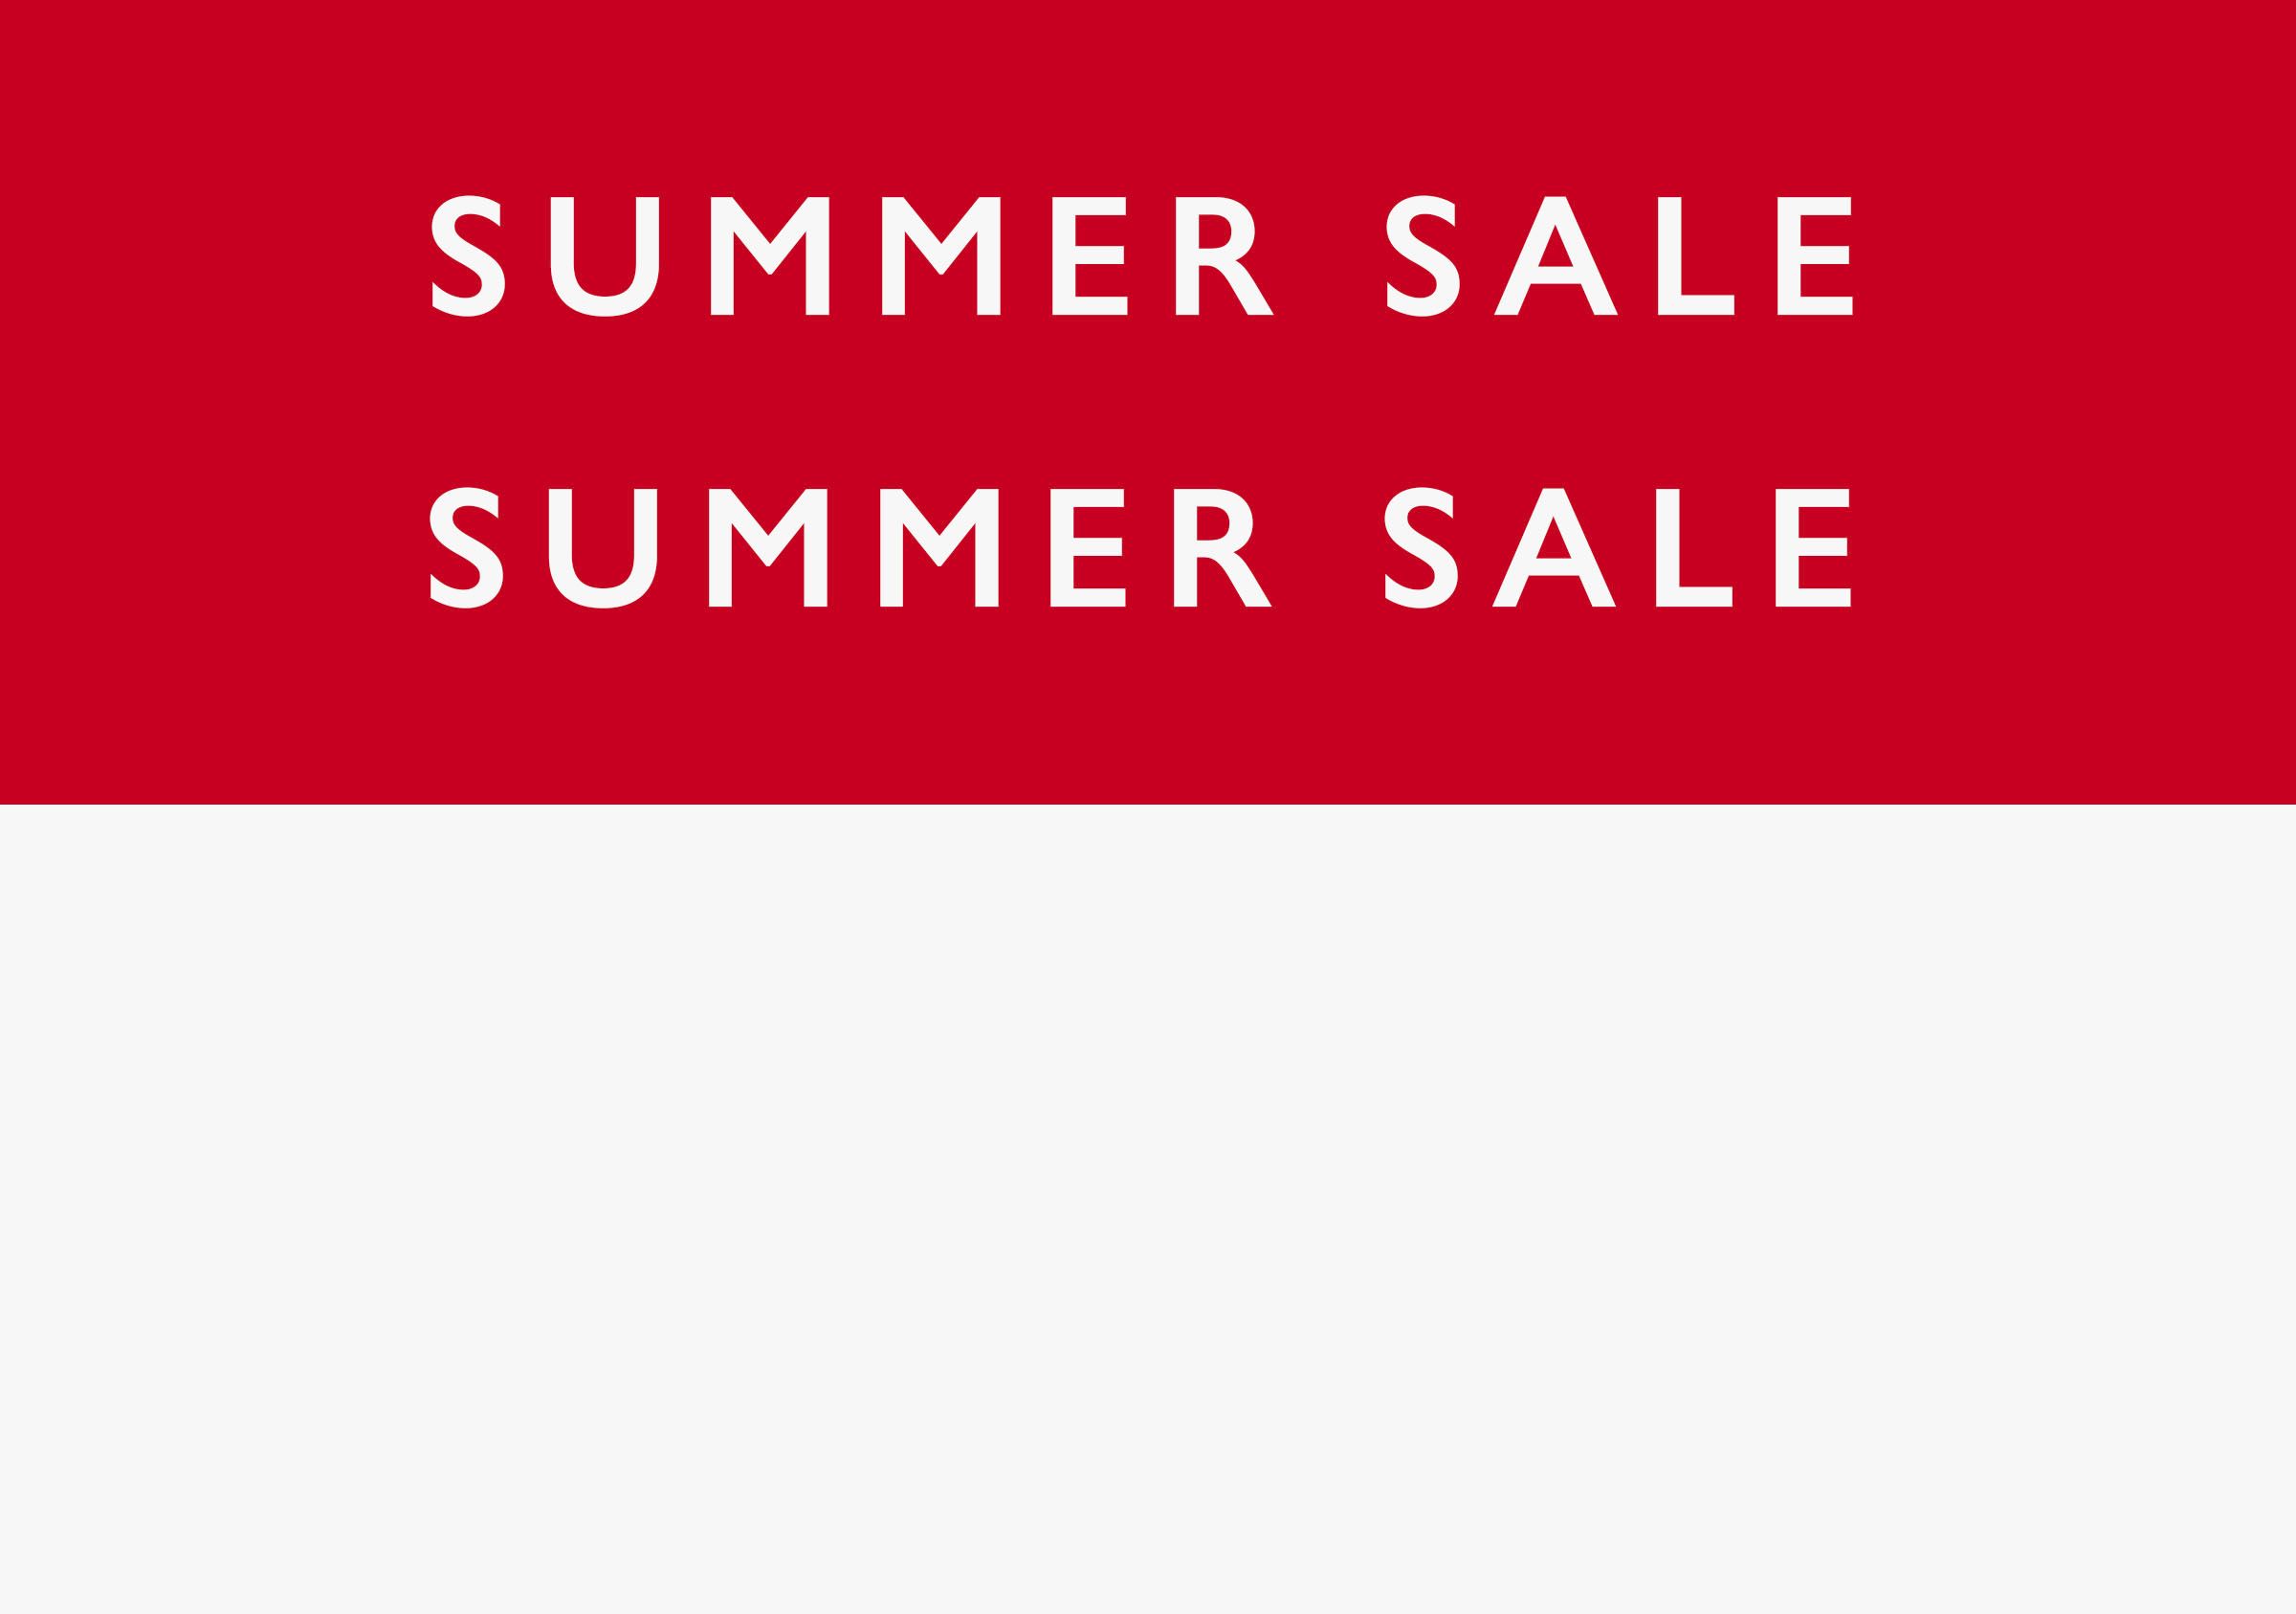 Summer Sale - Hallway